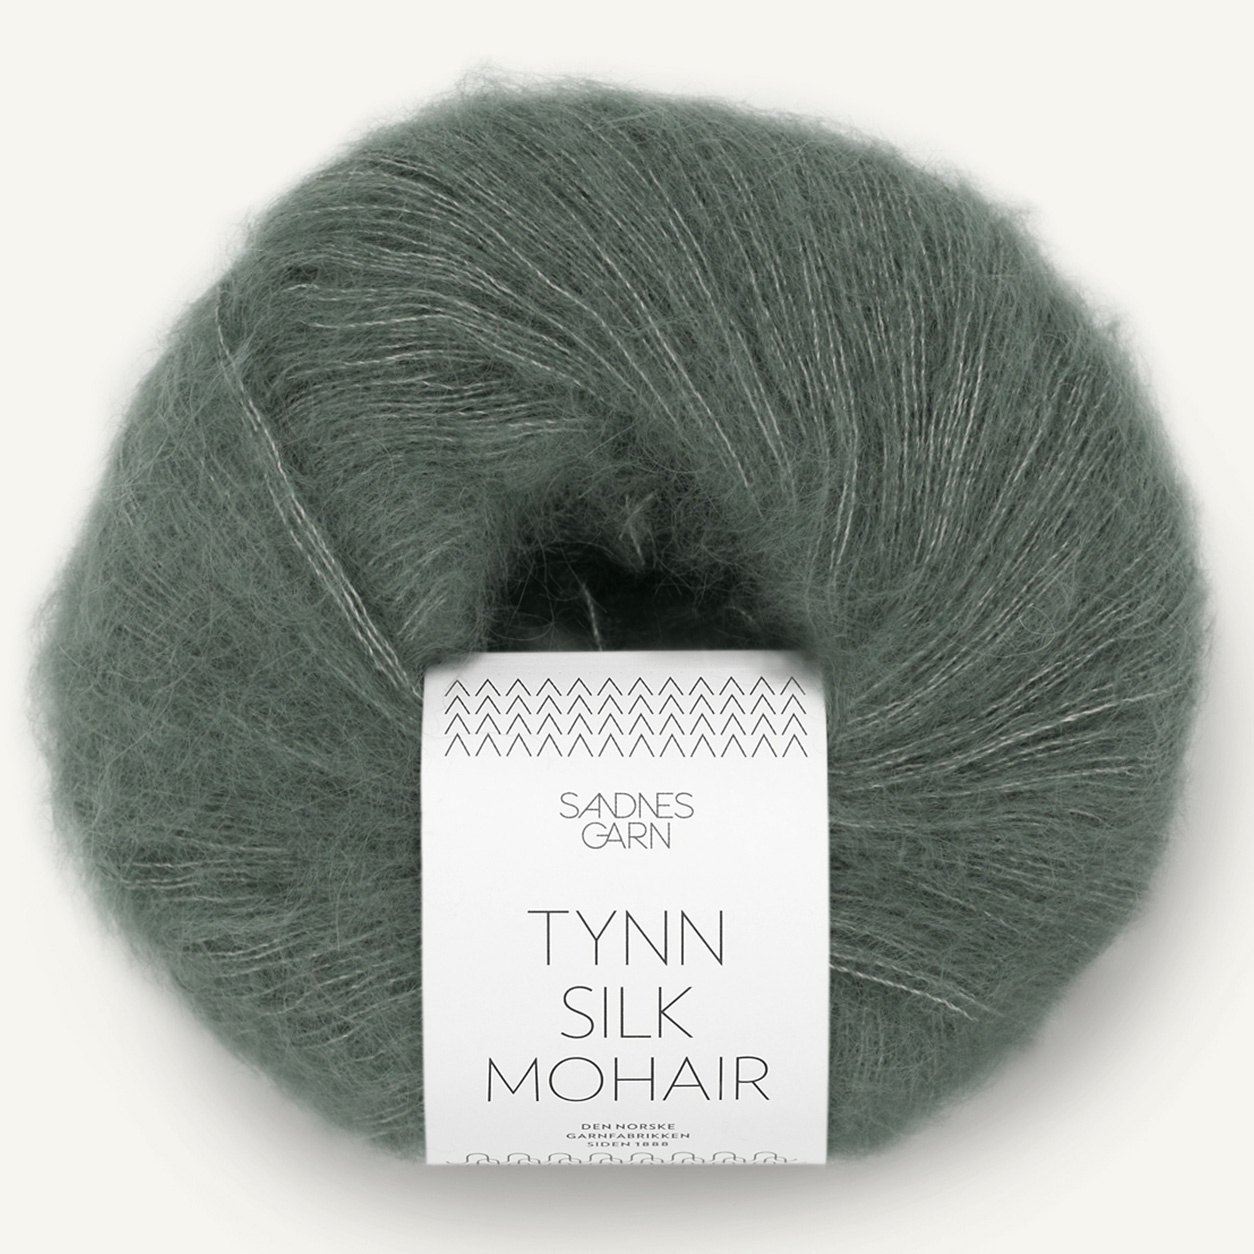 Sandnes Tynn Silk Mohair, 9071, Dunkles Staubgr&uuml;n